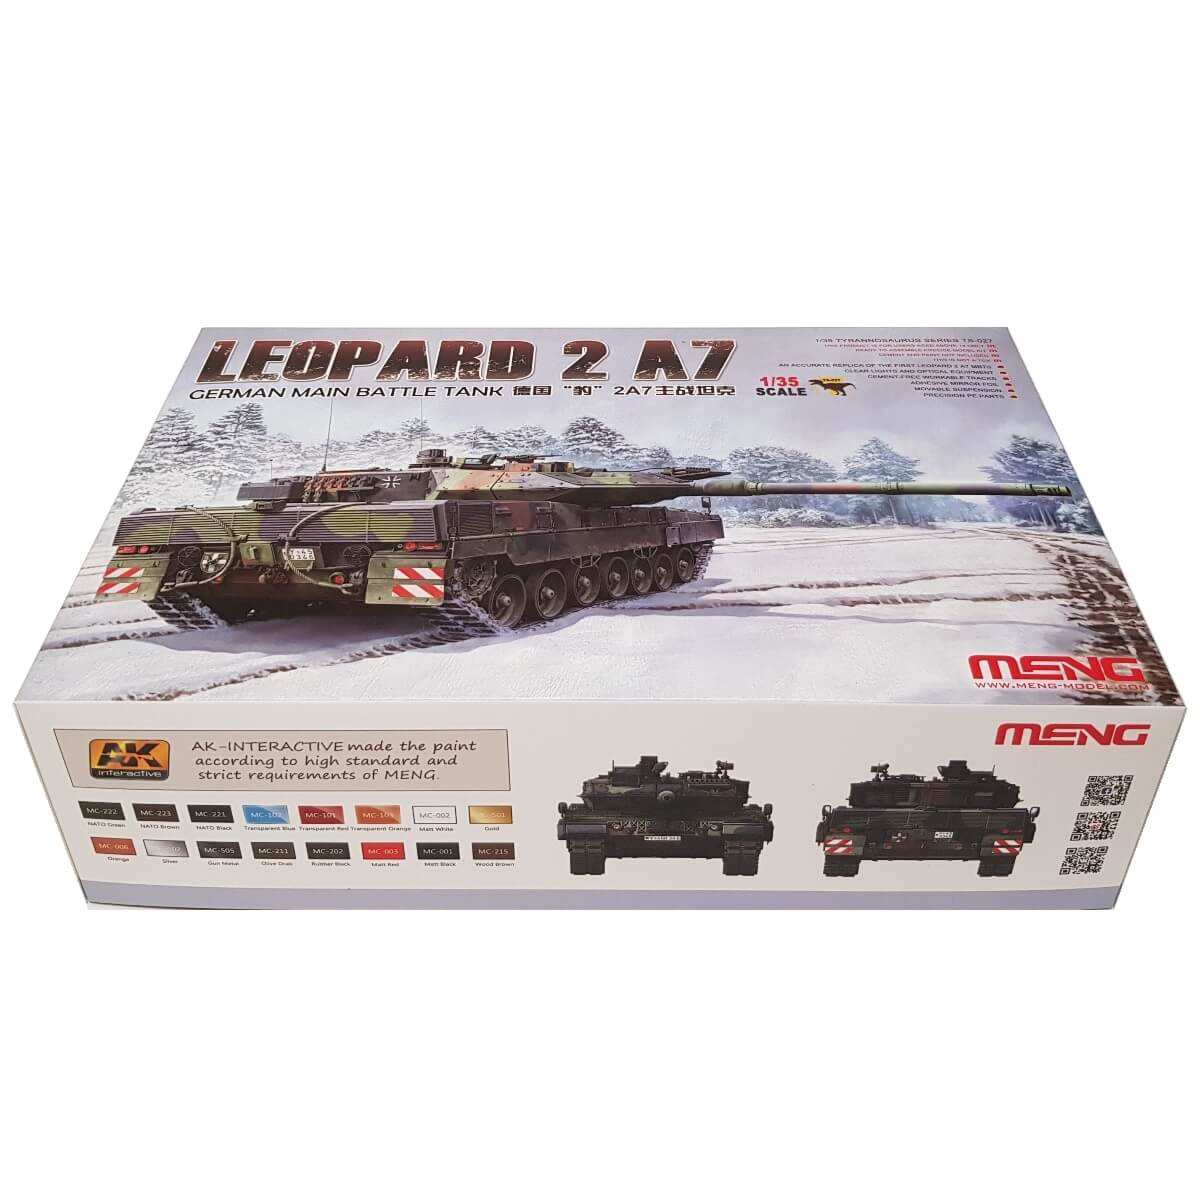 1:35 German Main Battle Tank Leopard 2 A7 - MENG